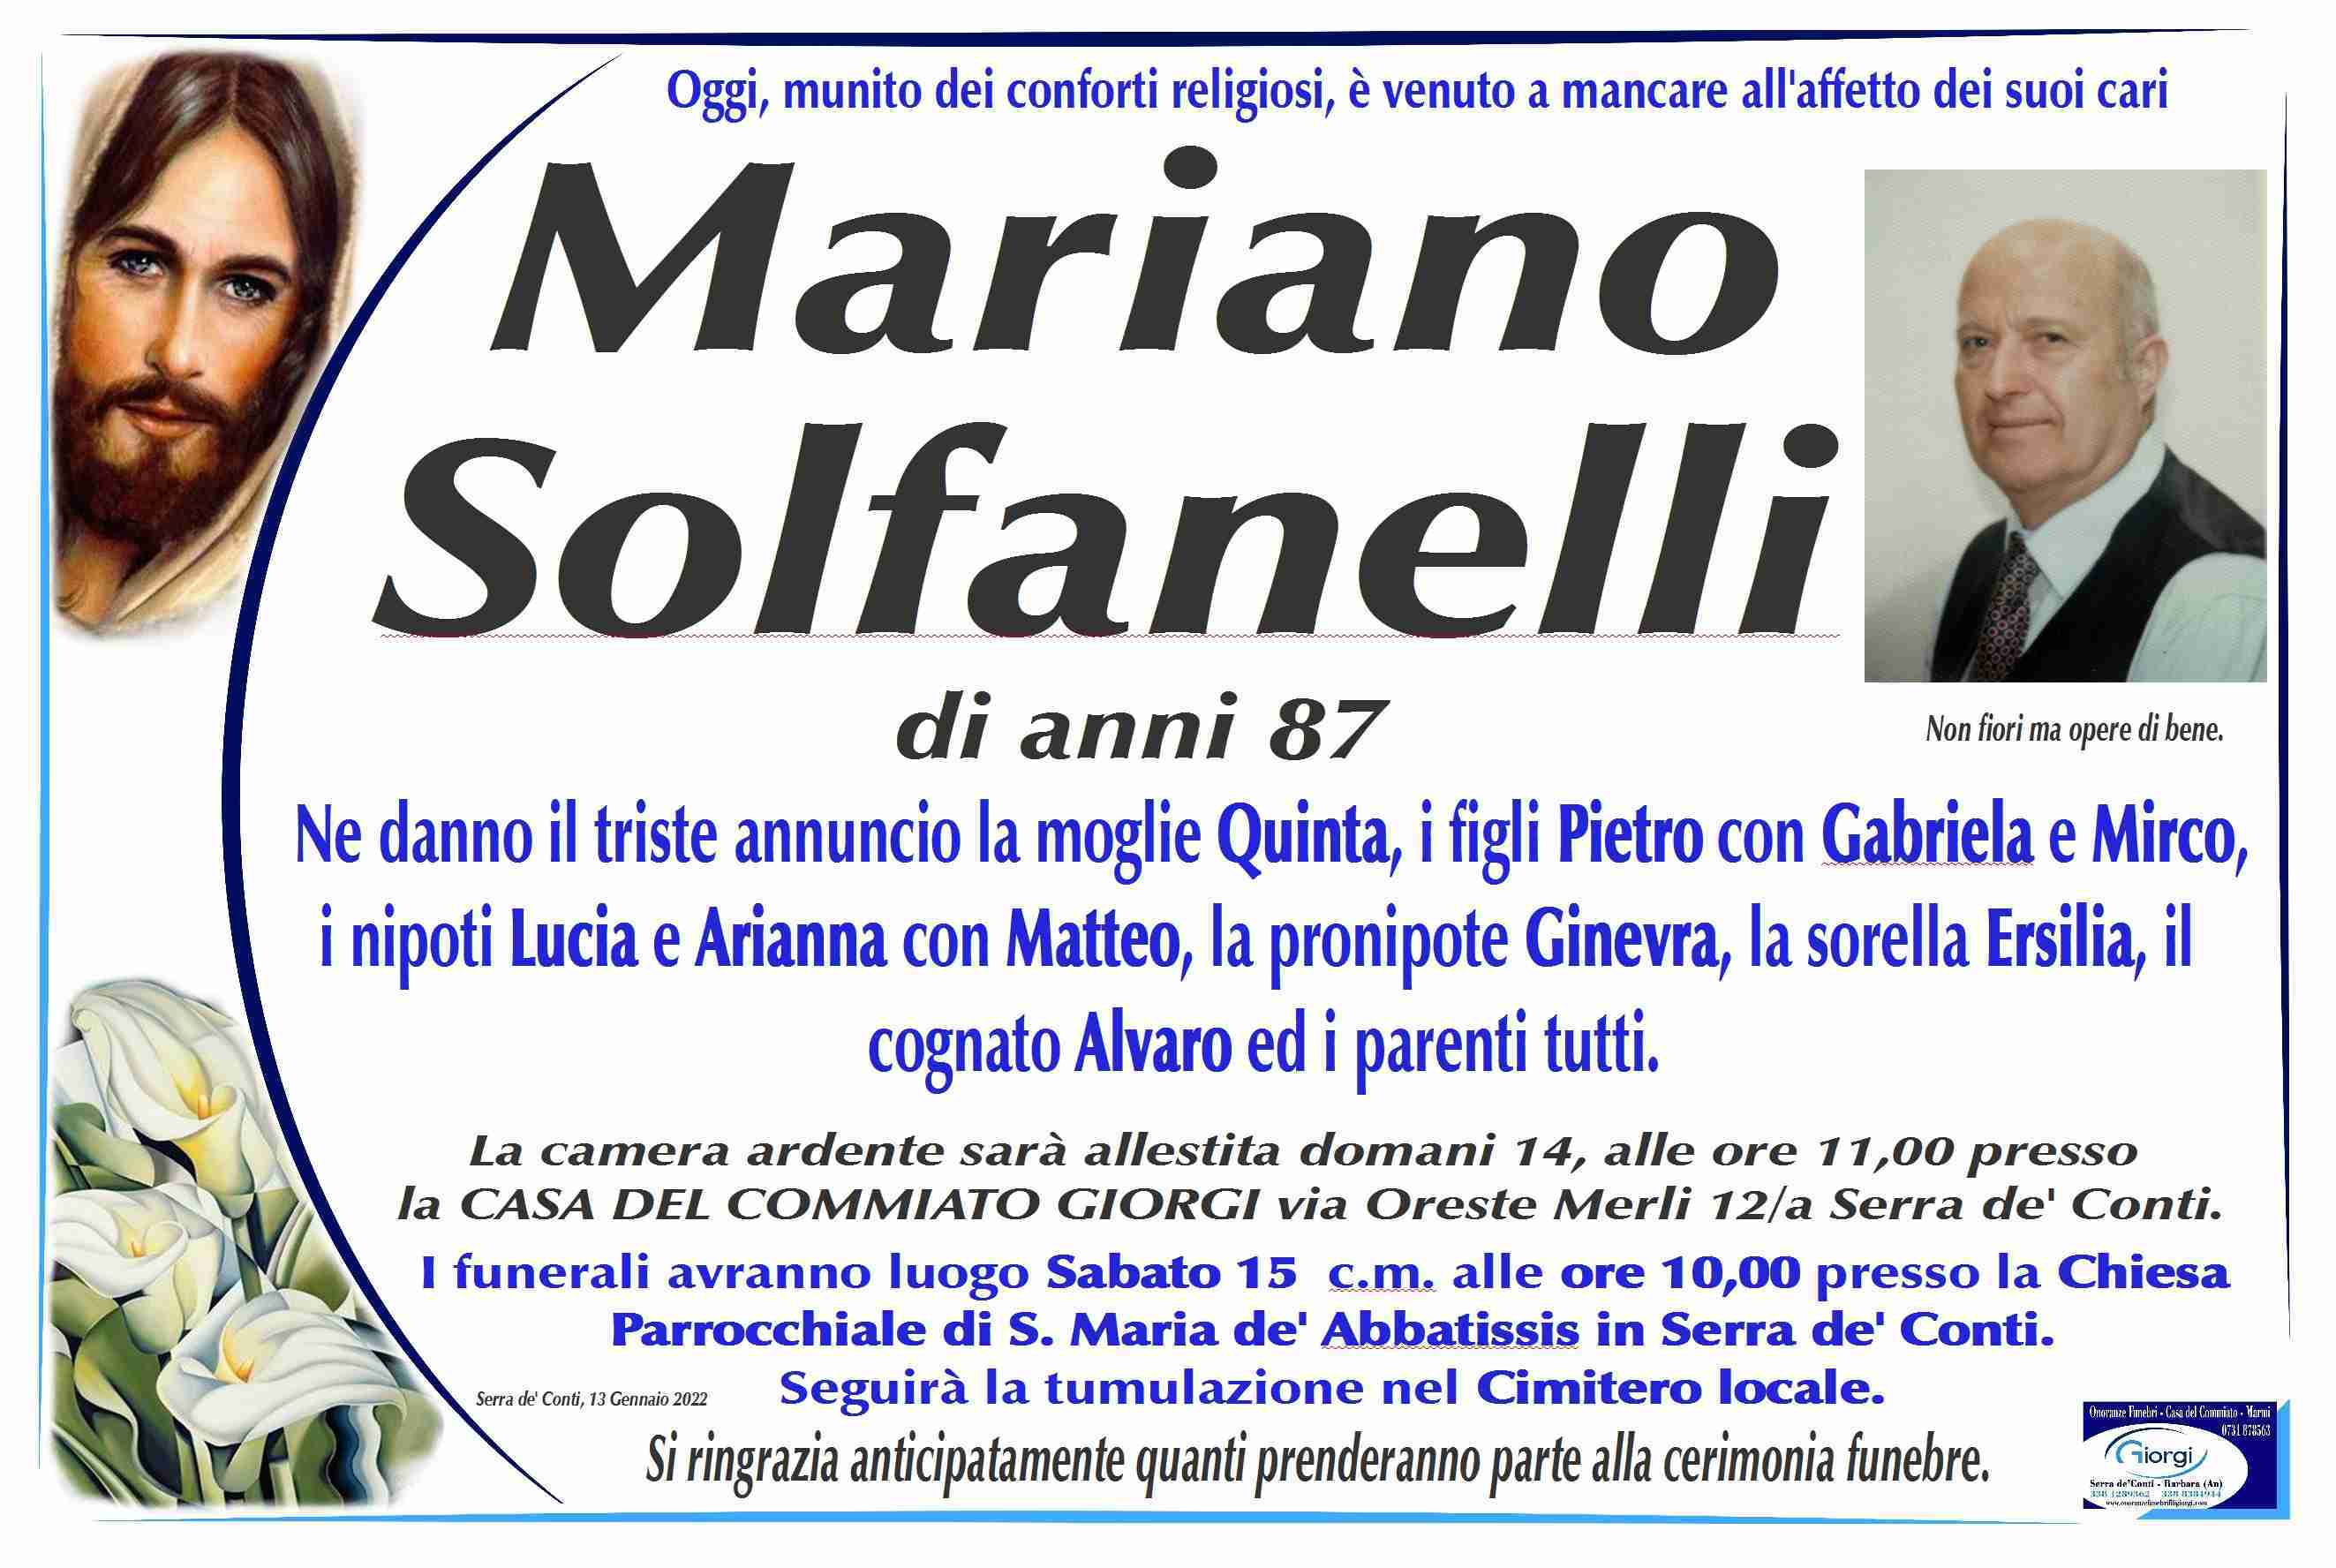 Mariano Solfanelli